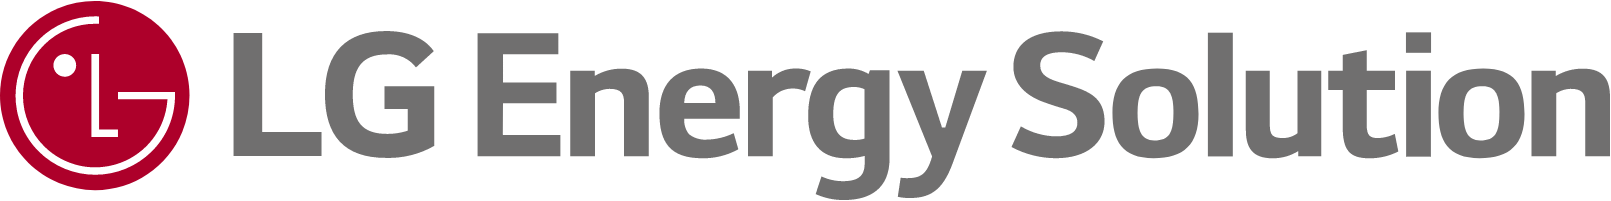 Marke: LG Energy